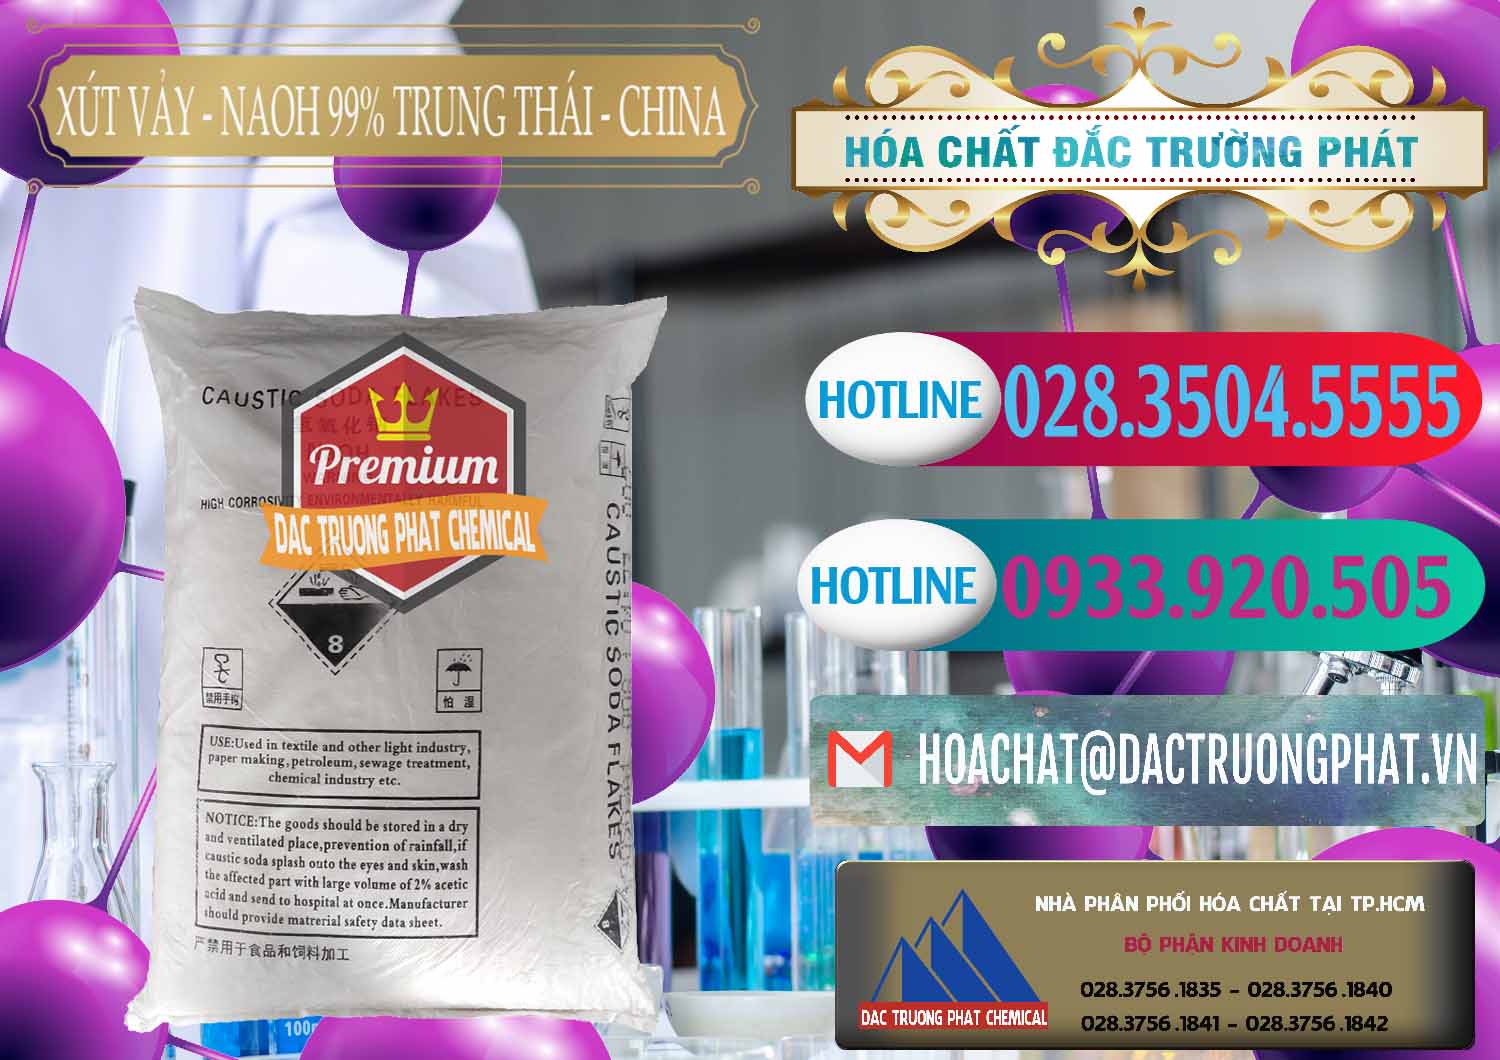 Chuyên bán _ phân phối Xút Vảy - NaOH Vảy 99% Trung Thái China Trung Quốc - 0176 - Nơi chuyên phân phối _ kinh doanh hóa chất tại TP.HCM - truongphat.vn